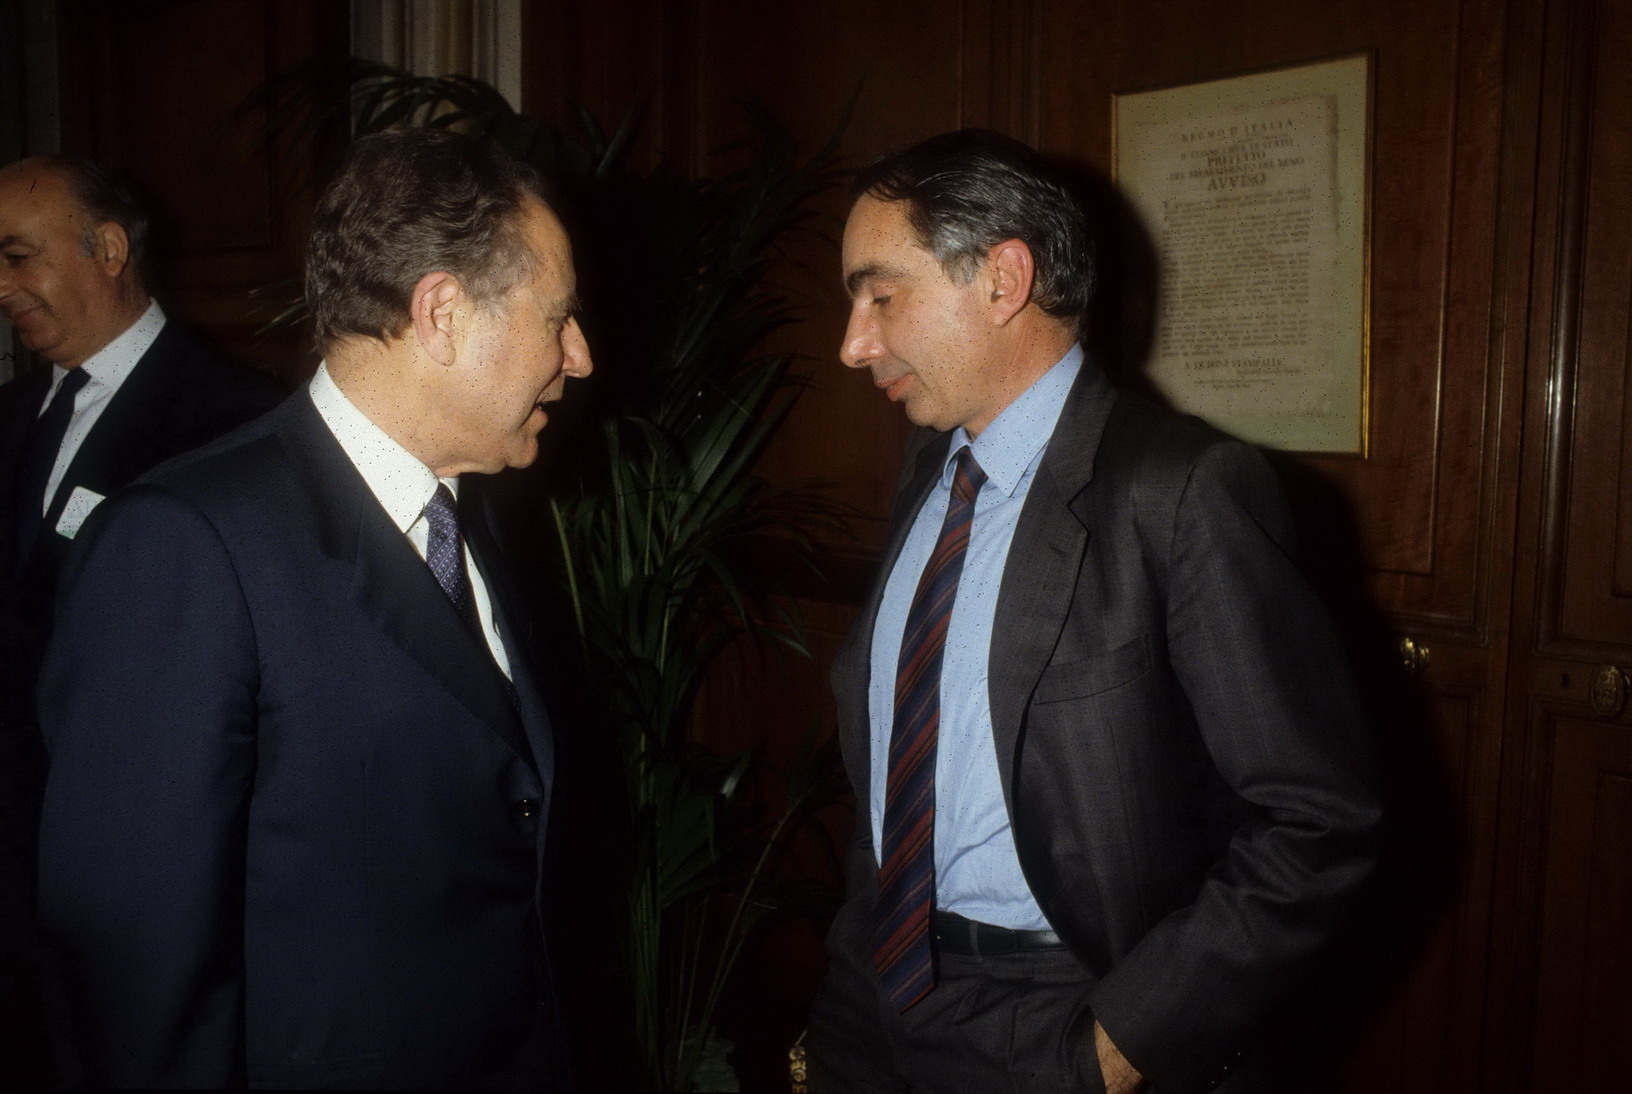 Carlo Azeglio Ciampi, Giuliano Amato (1986)